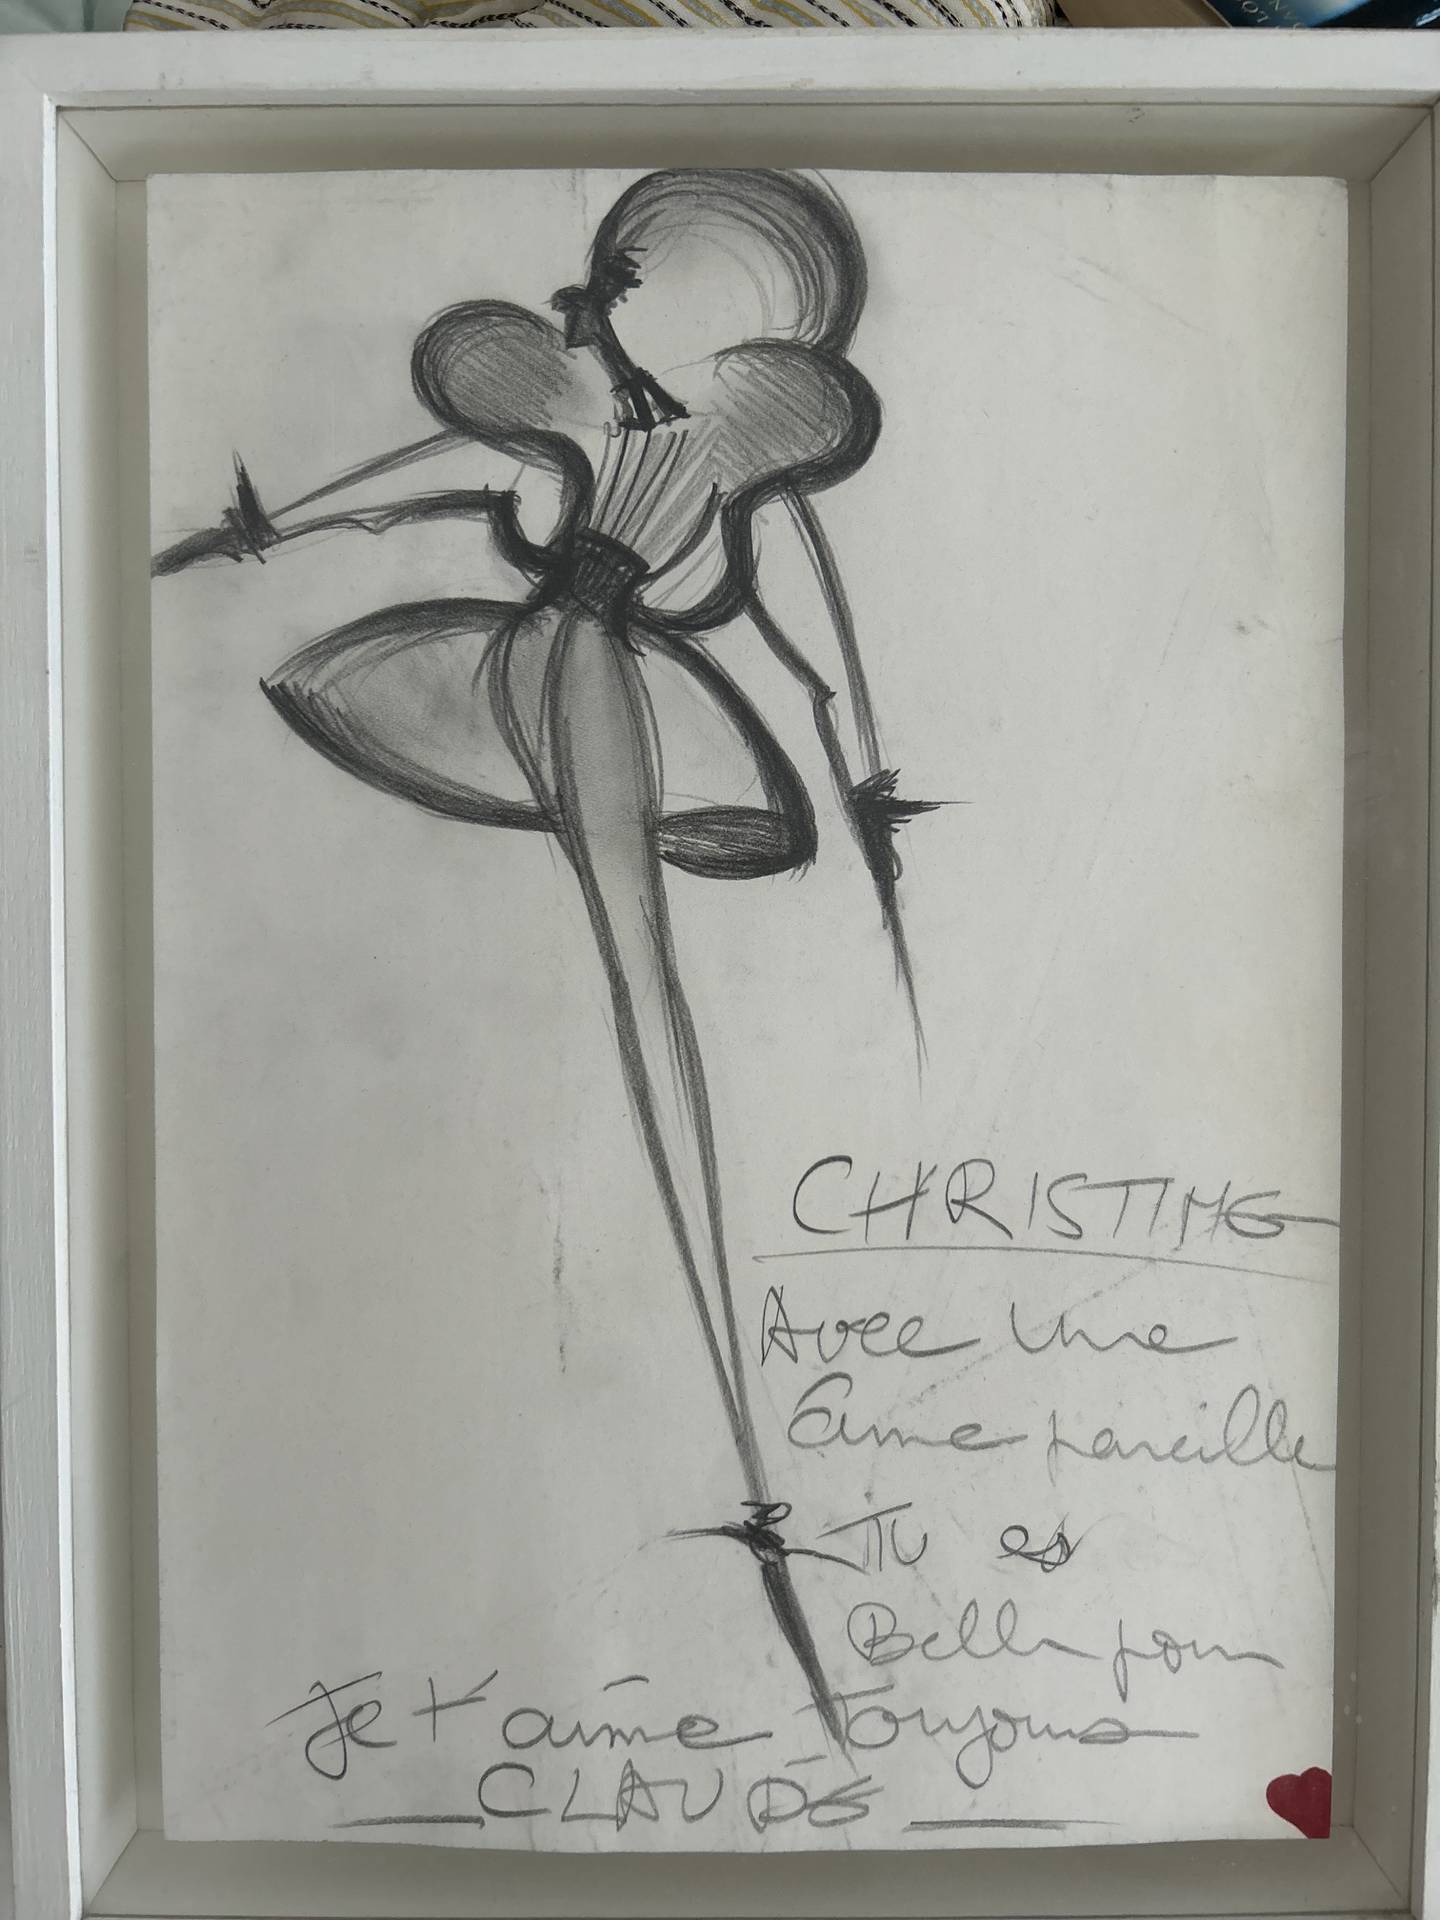 A sketch by Claude Montana for Christine Bergström.